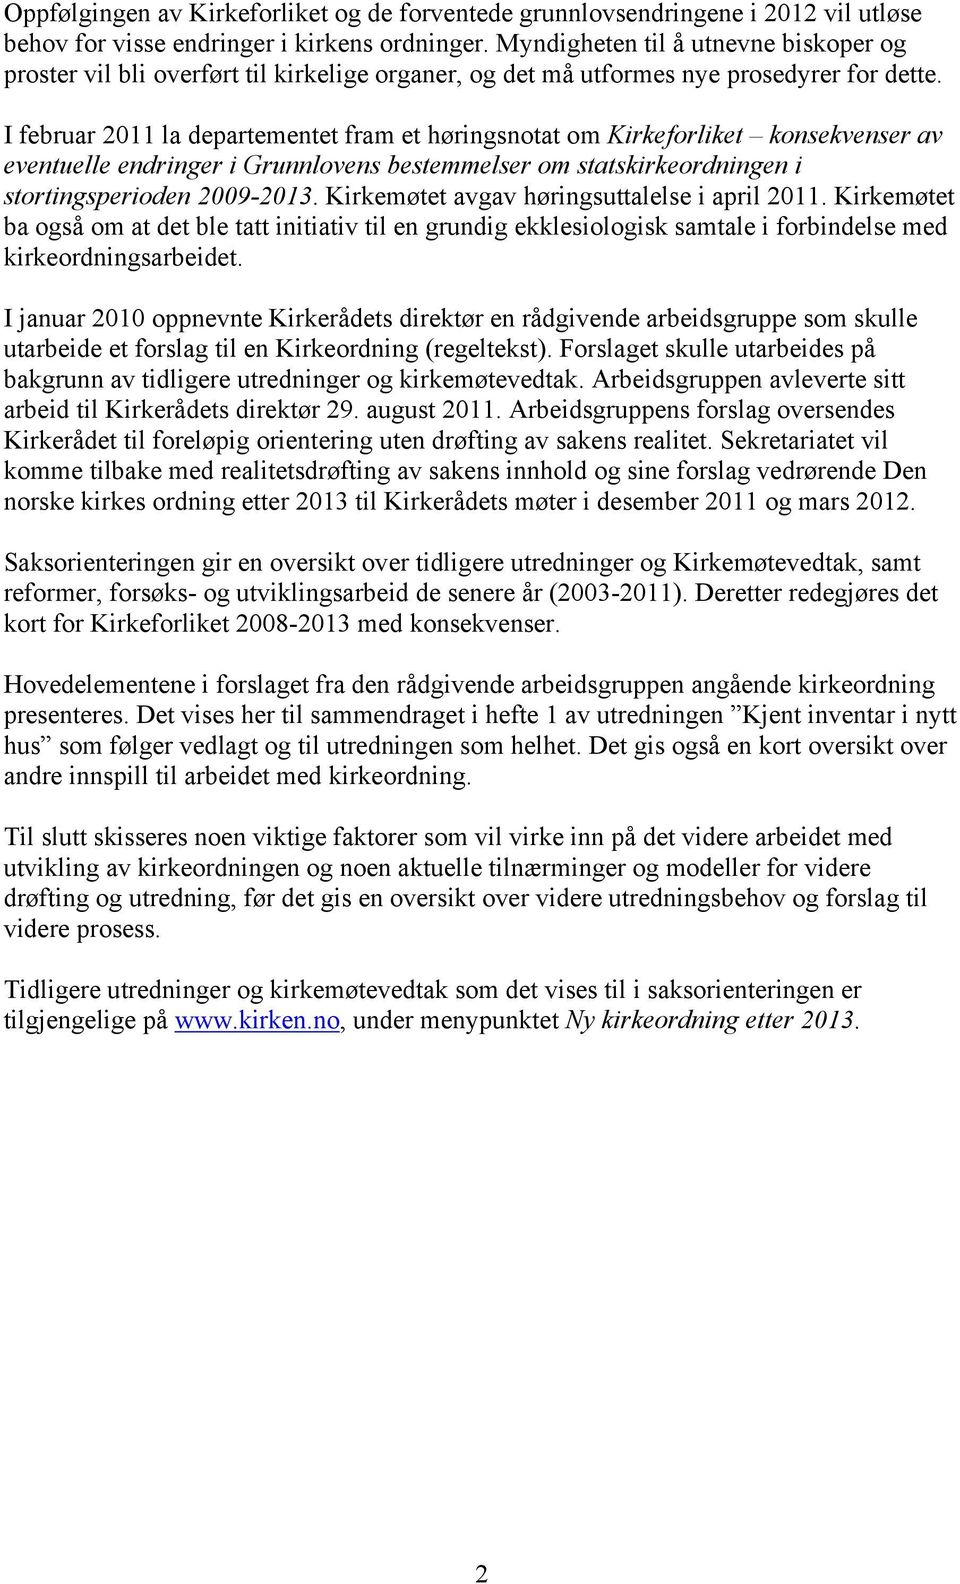 I februar 2011 la departementet fram et høringsnotat om Kirkeforliket konsekvenser av eventuelle endringer i Grunnlovens bestemmelser om statskirkeordningen i stortingsperioden 2009-2013.